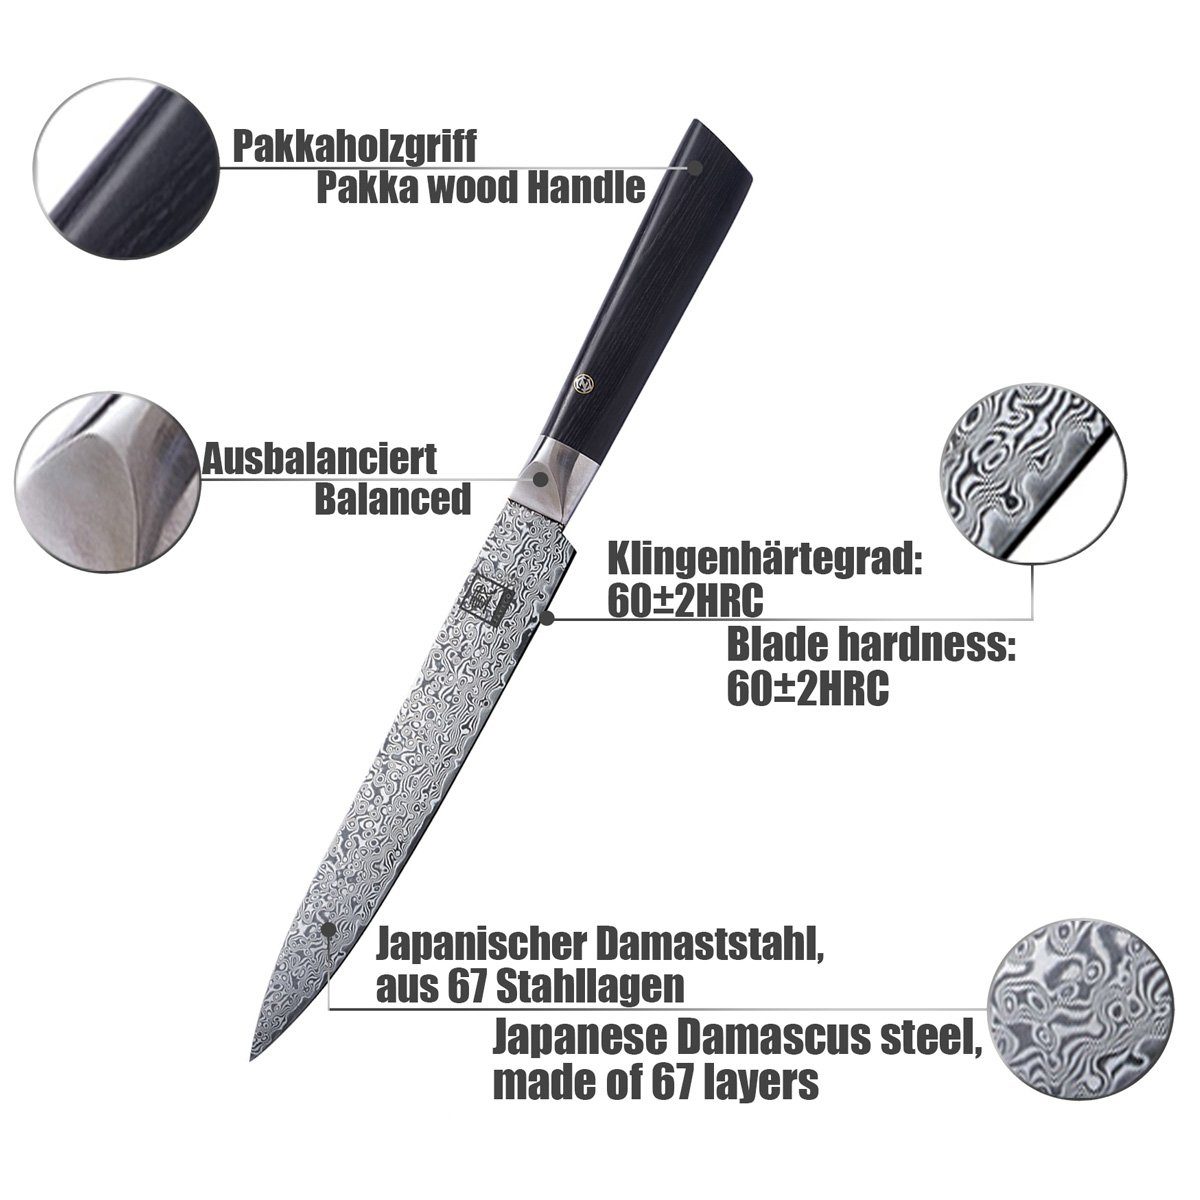 VG-10 EDITION Fleischmesser ZAYIKO Damastmesser - Stahlkern Damastmesser BLACK Pakkaholz